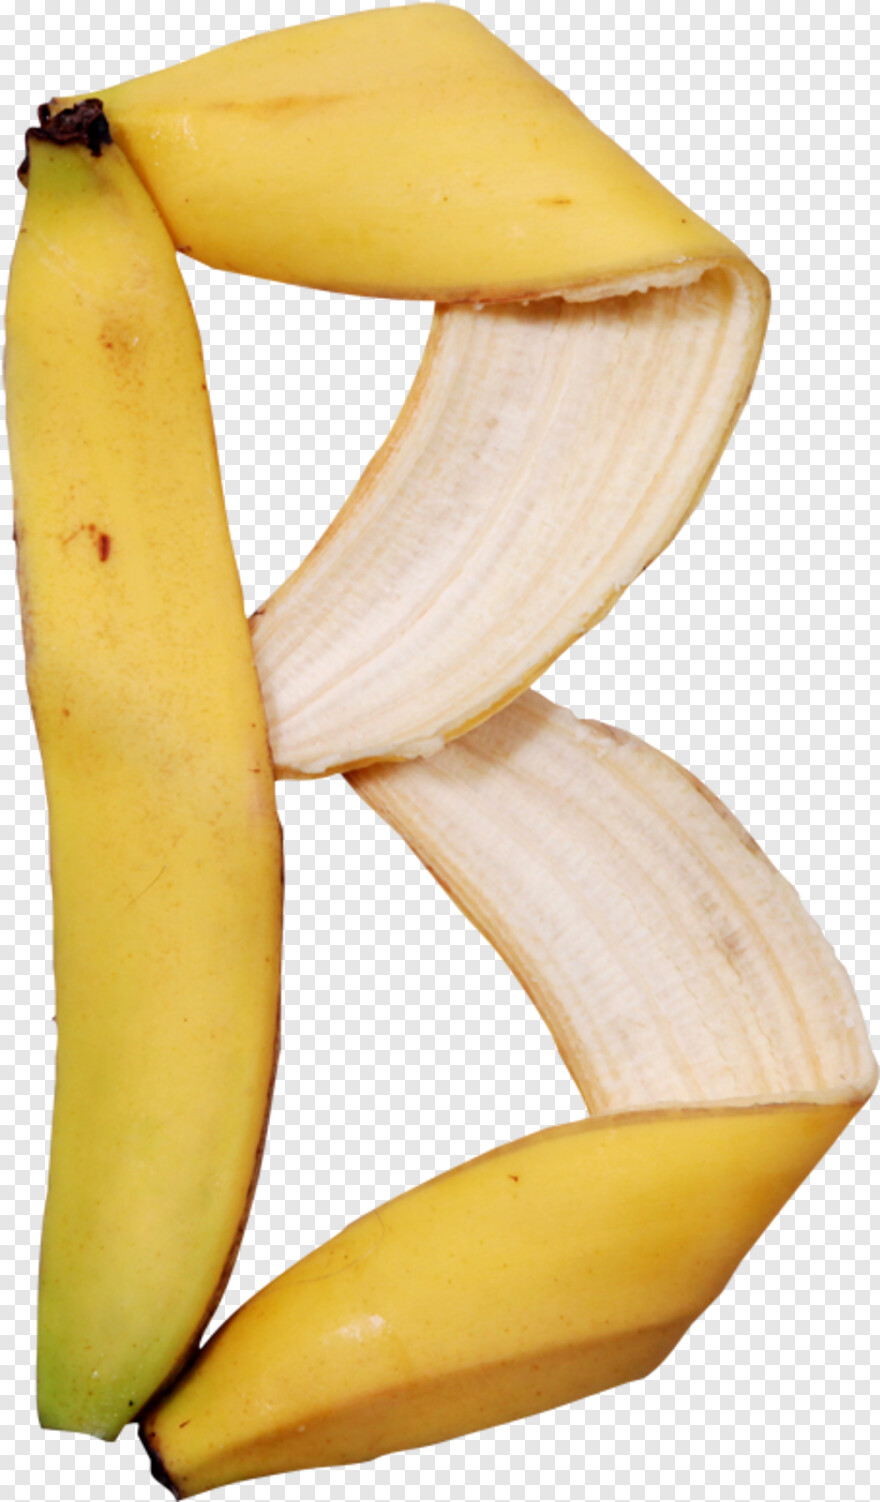 banana # 544658